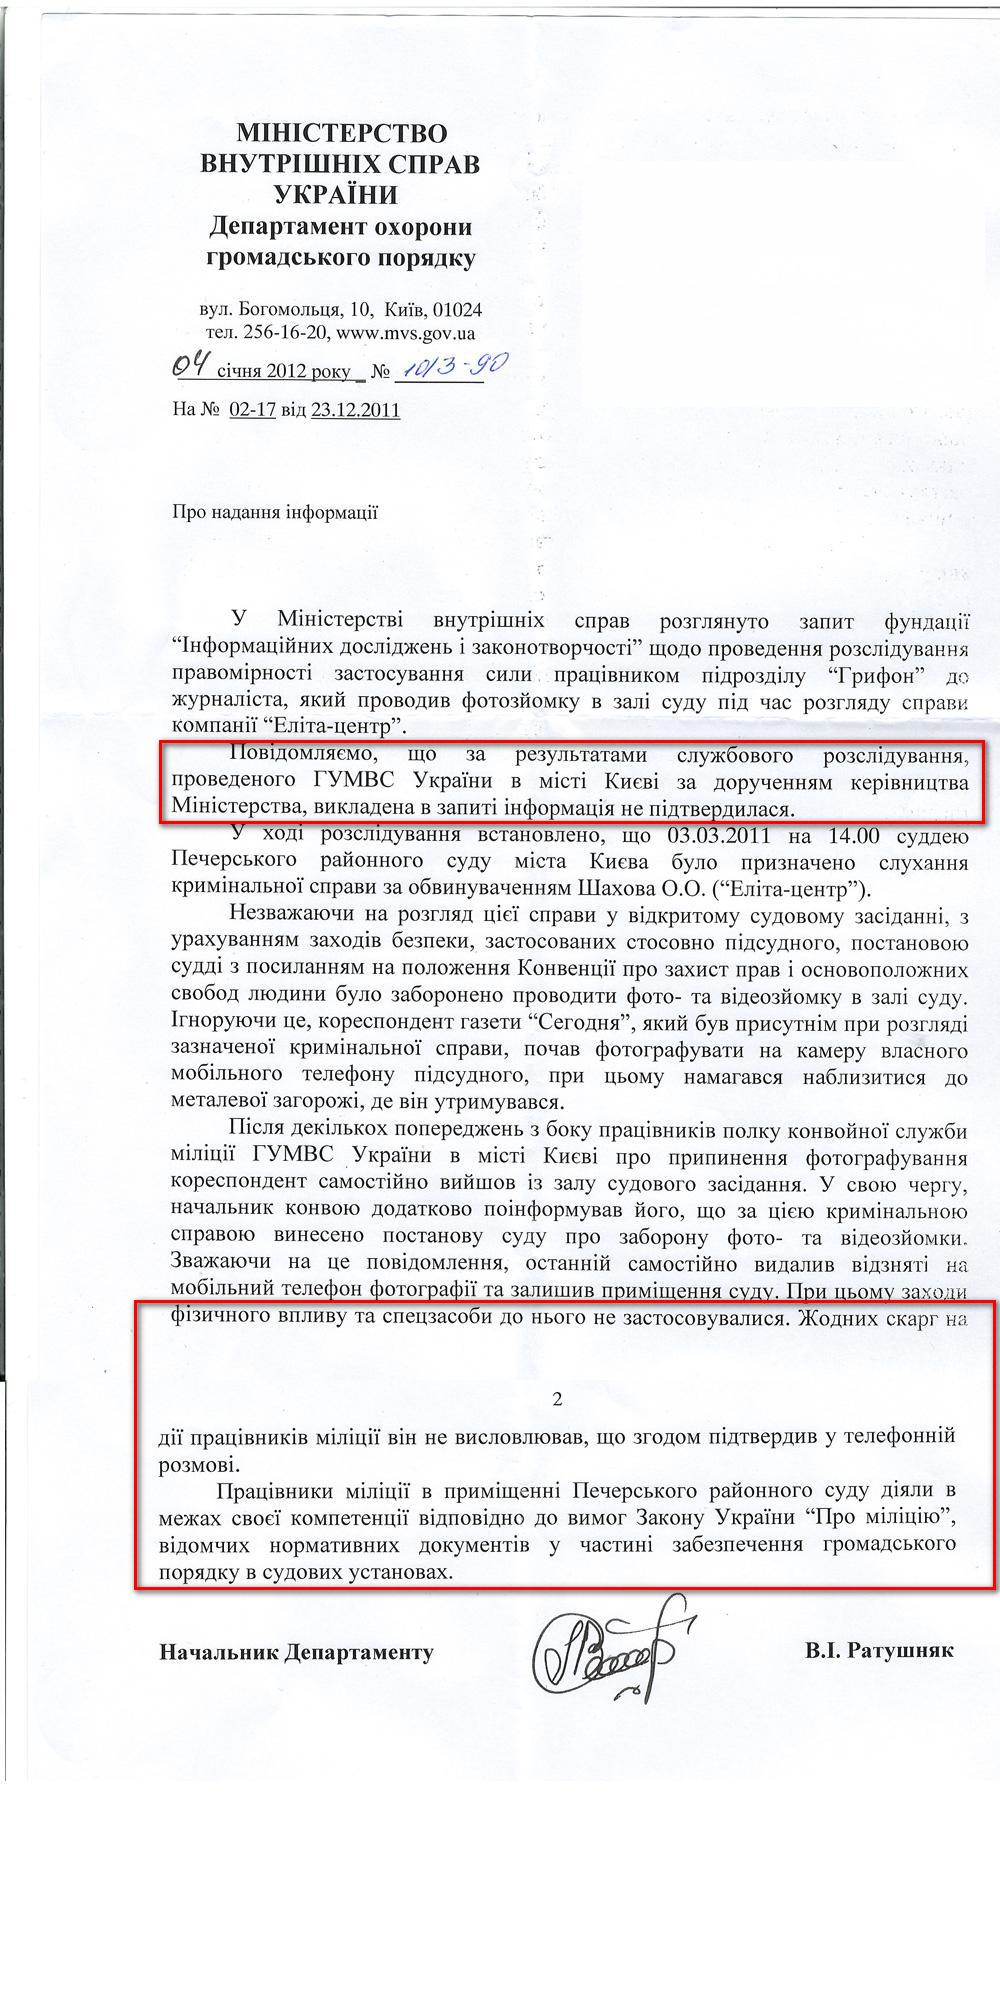 Письмо Начальника Департамента охраны общественного порядка В.И. Ратушняка